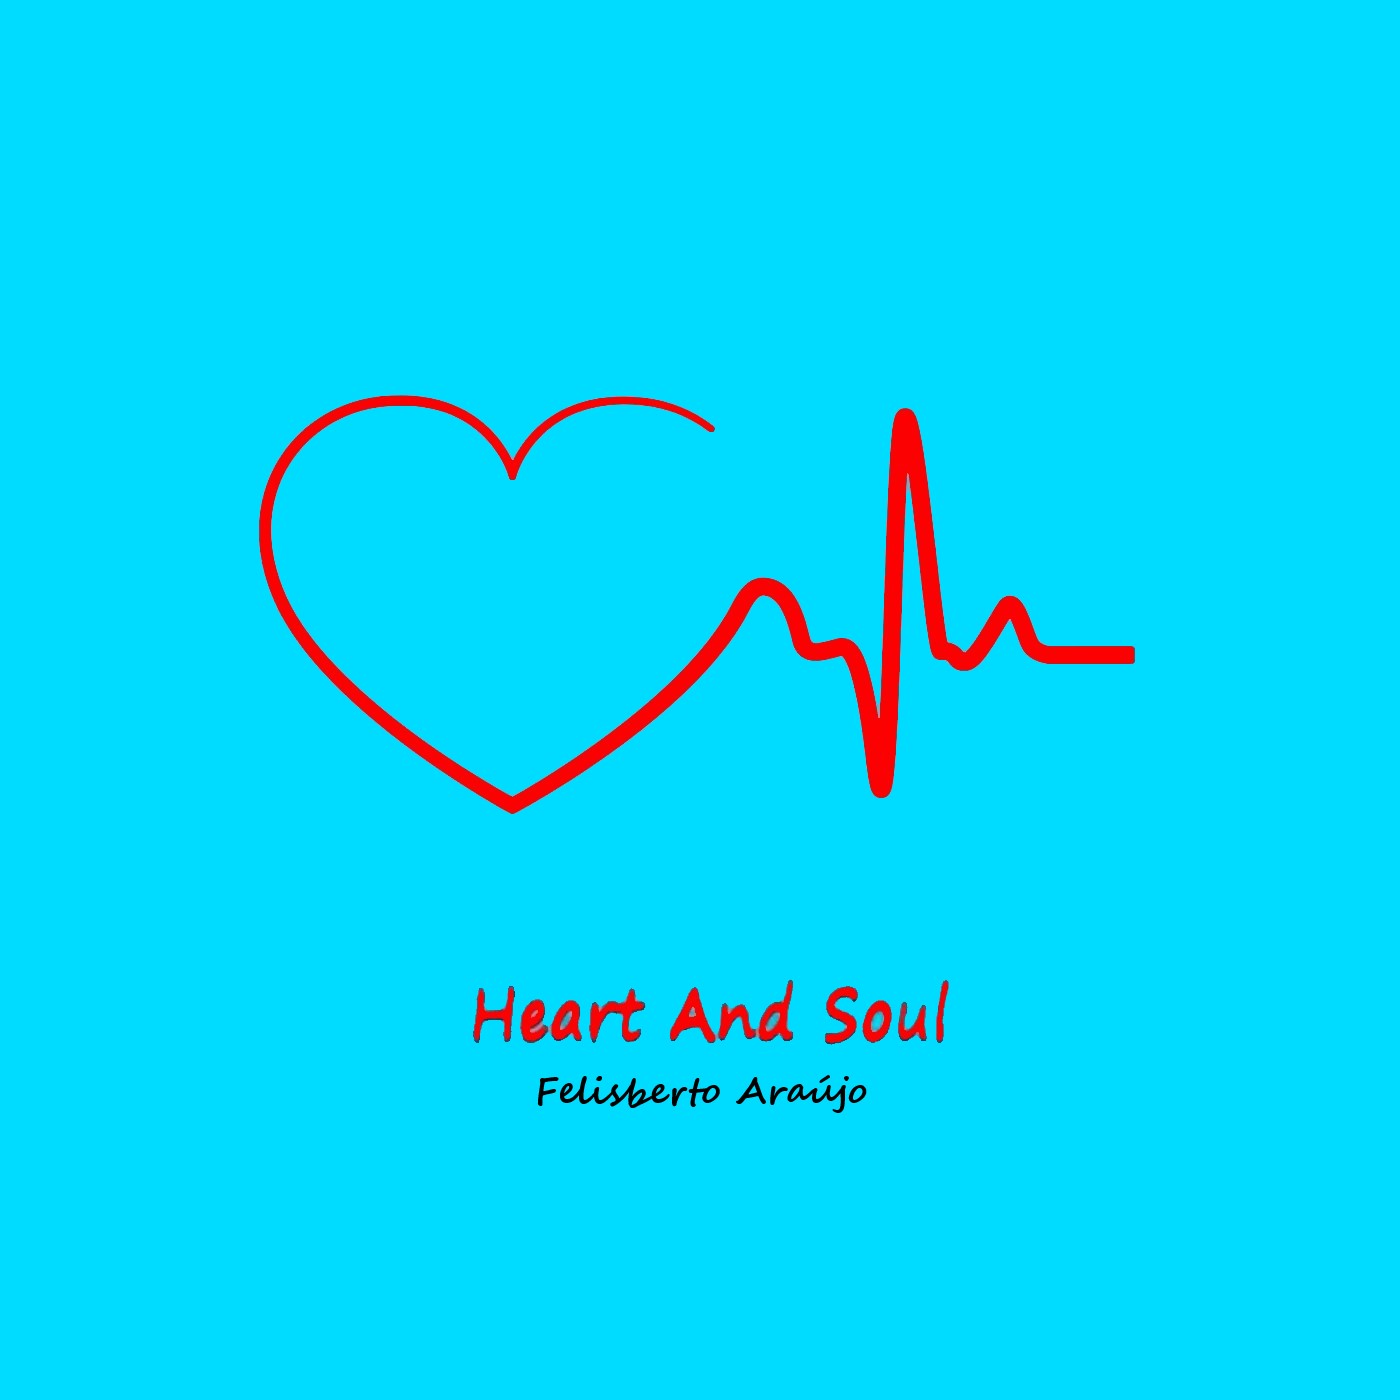 Heart And Soul by Felisberto Araújo | Album